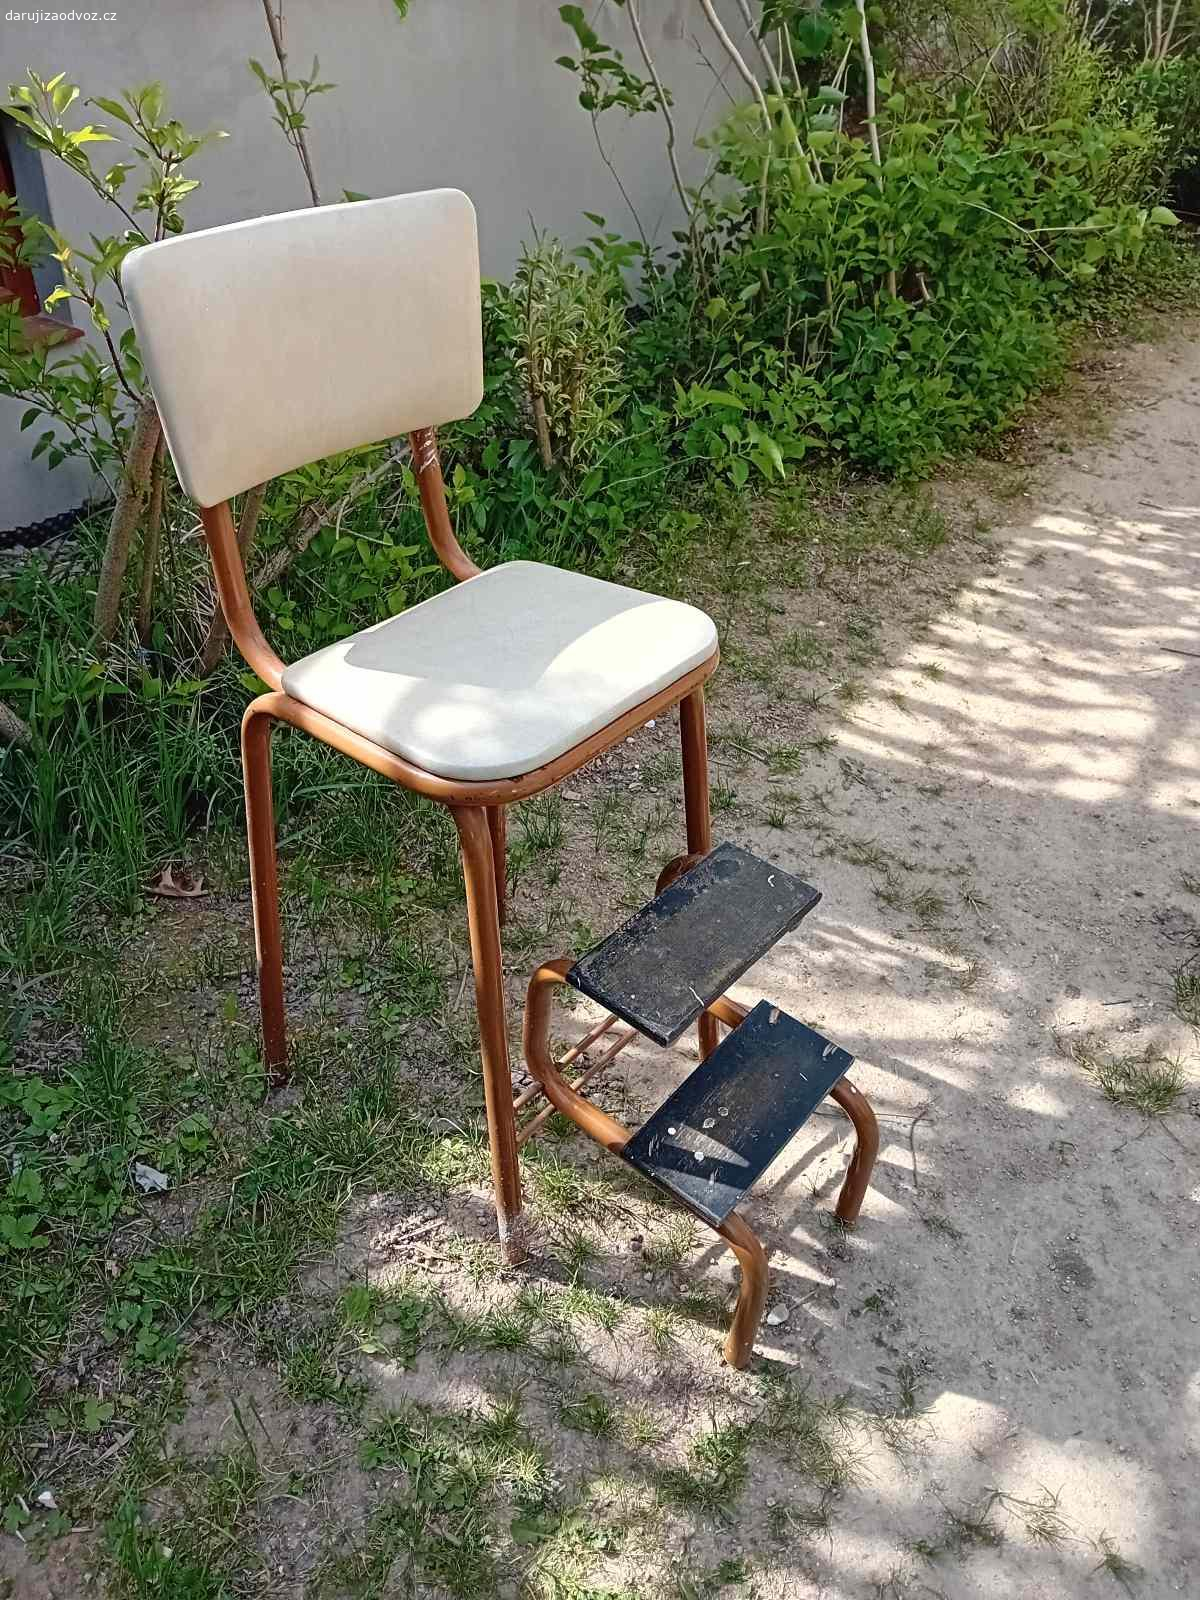 Daruji zachovalou barovou židli se schůdky. V nabídce je zachovalá barová židle se schůdky. Schůdky mají cákance od barvy. Široká paleta využití. Židle je spolehlivá, ale ne zcela moderní a je vidět, že se používala.